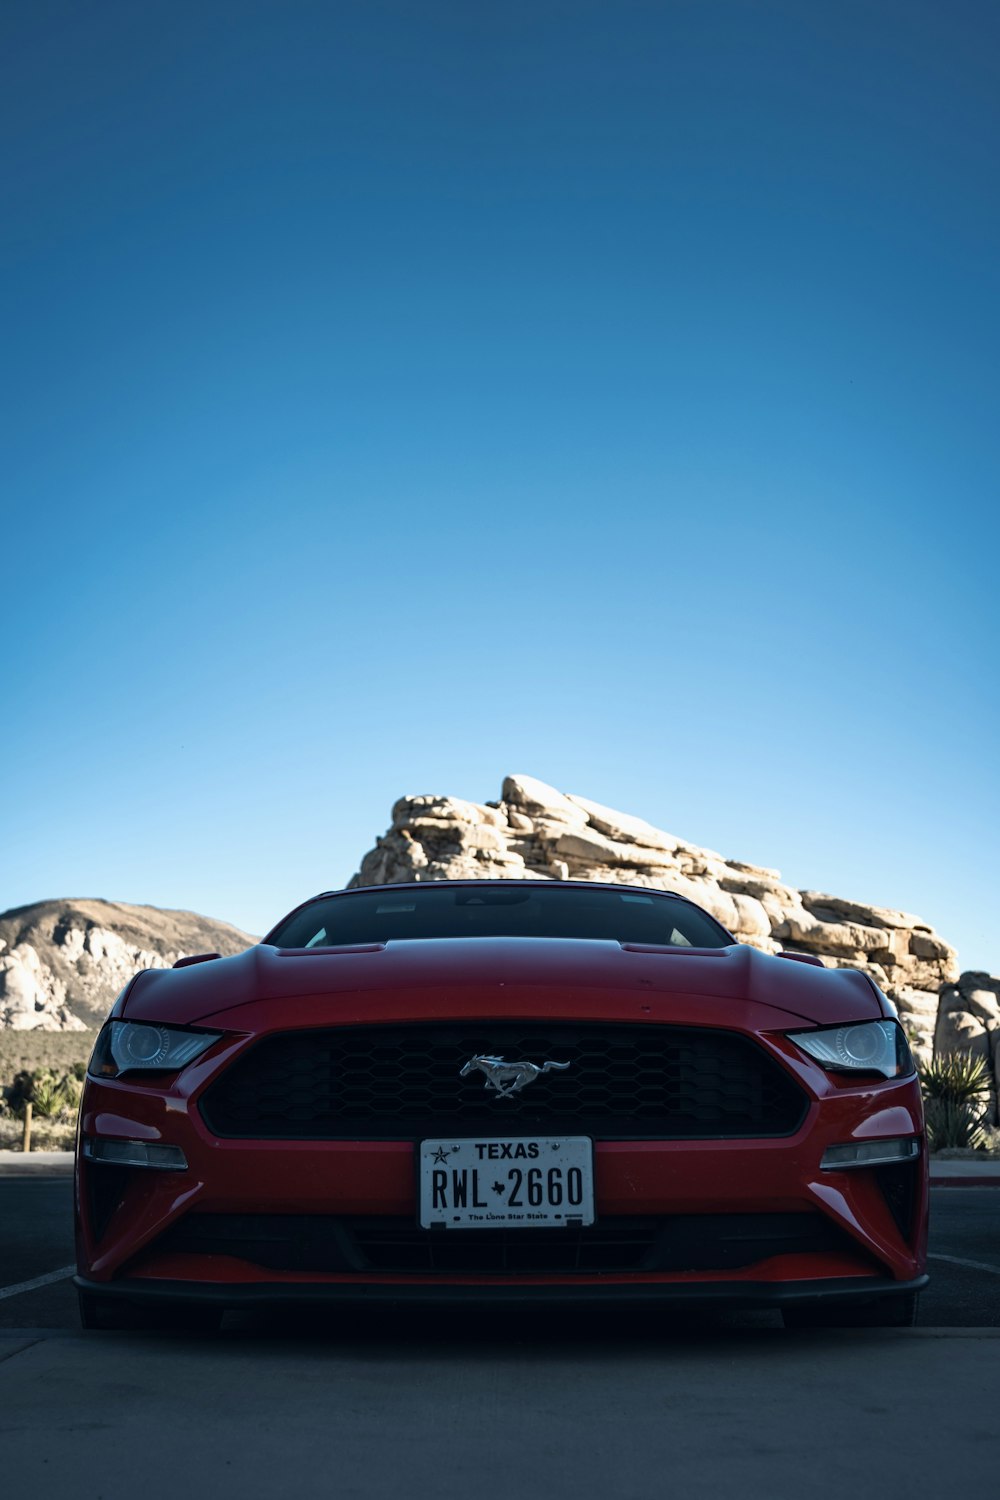 Un Mustang rojo estacionado en un estacionamiento